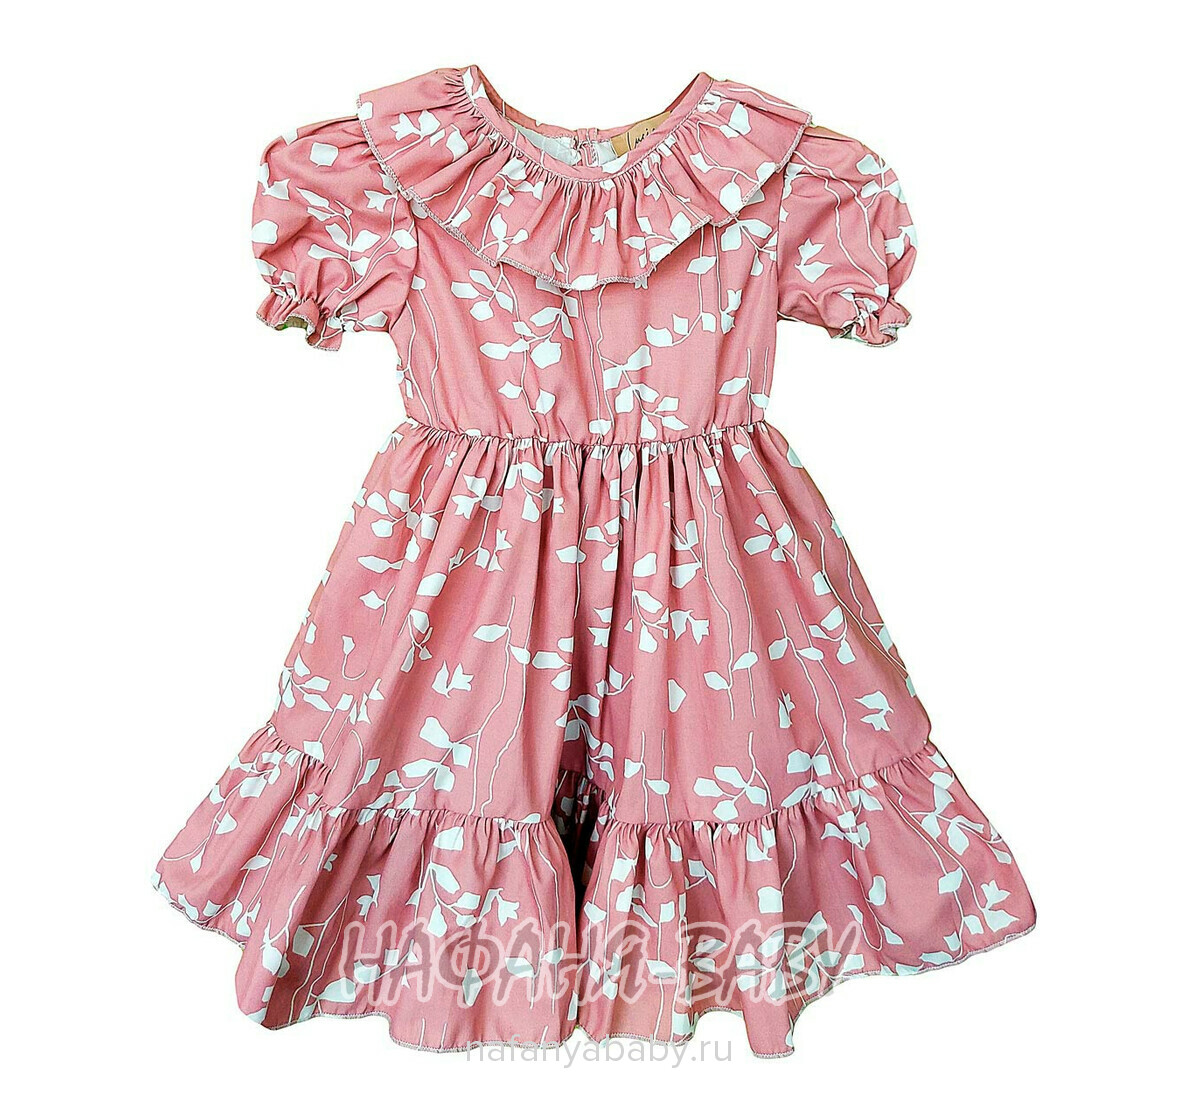 Детское платье + болеро LUCIANA арт.4057 для девочки от 9 до 24 мес, цвет чайная роза, оптом Турция